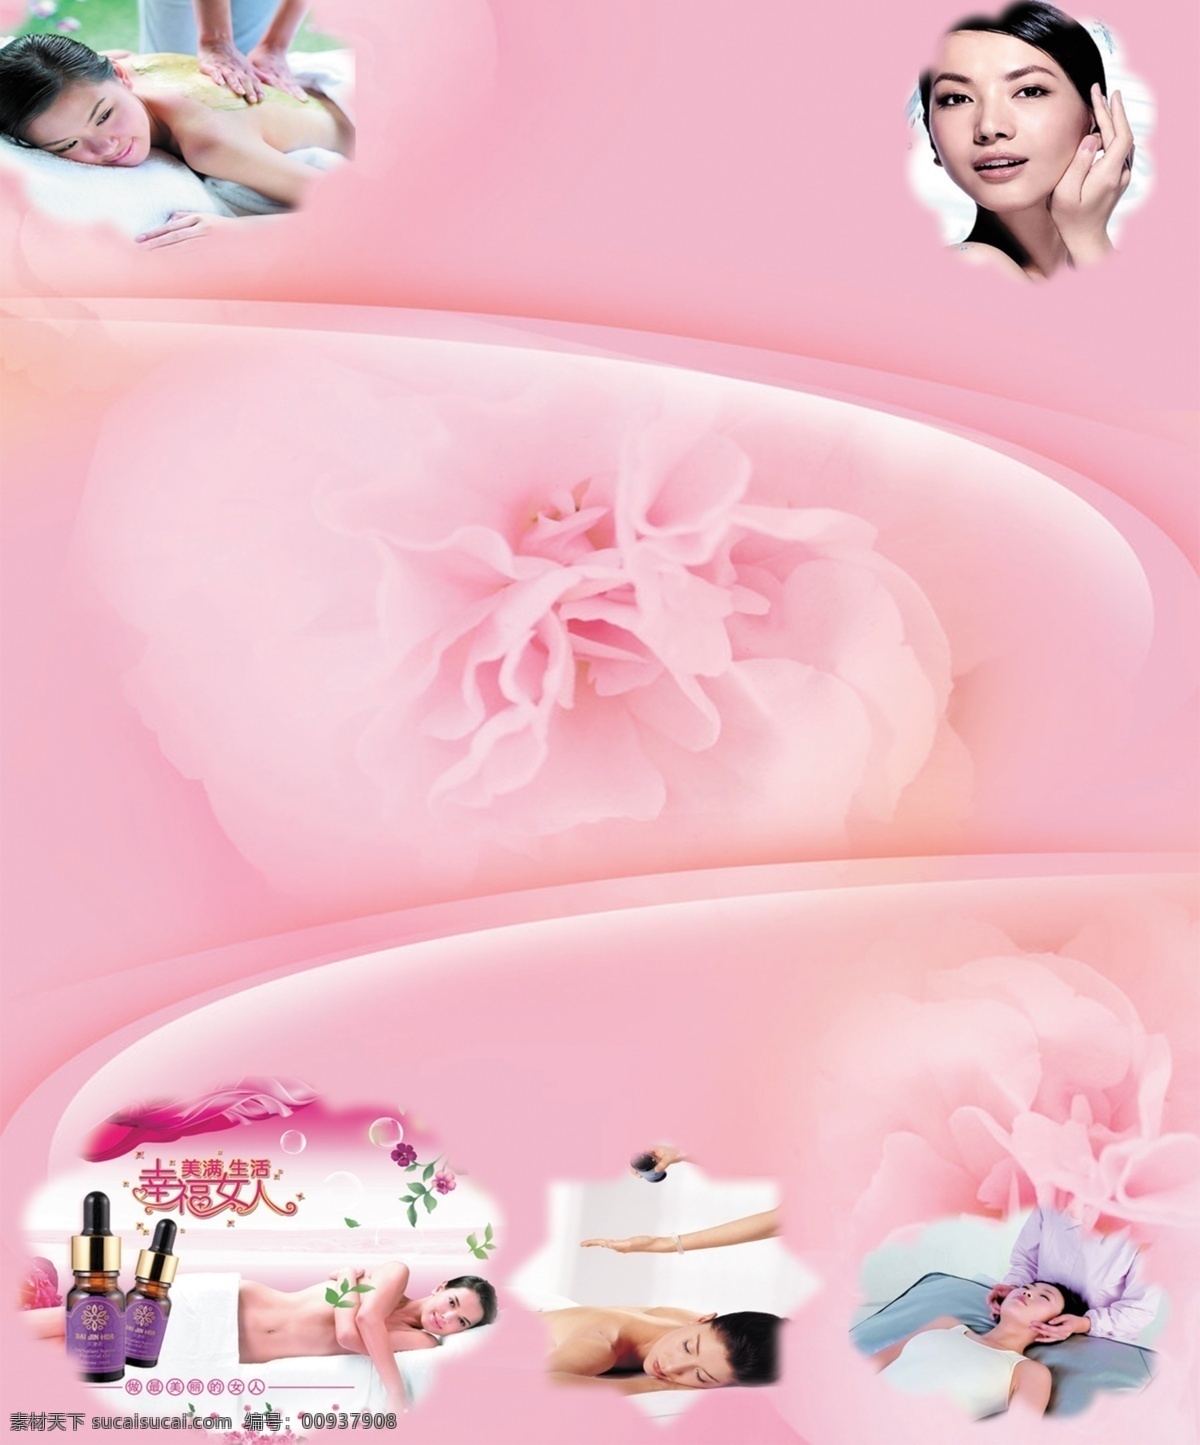 粉色背景 广告设计模板 花 美女 美容 美容展板 源文件 展板模板 展板 模板下载 其他展板设计